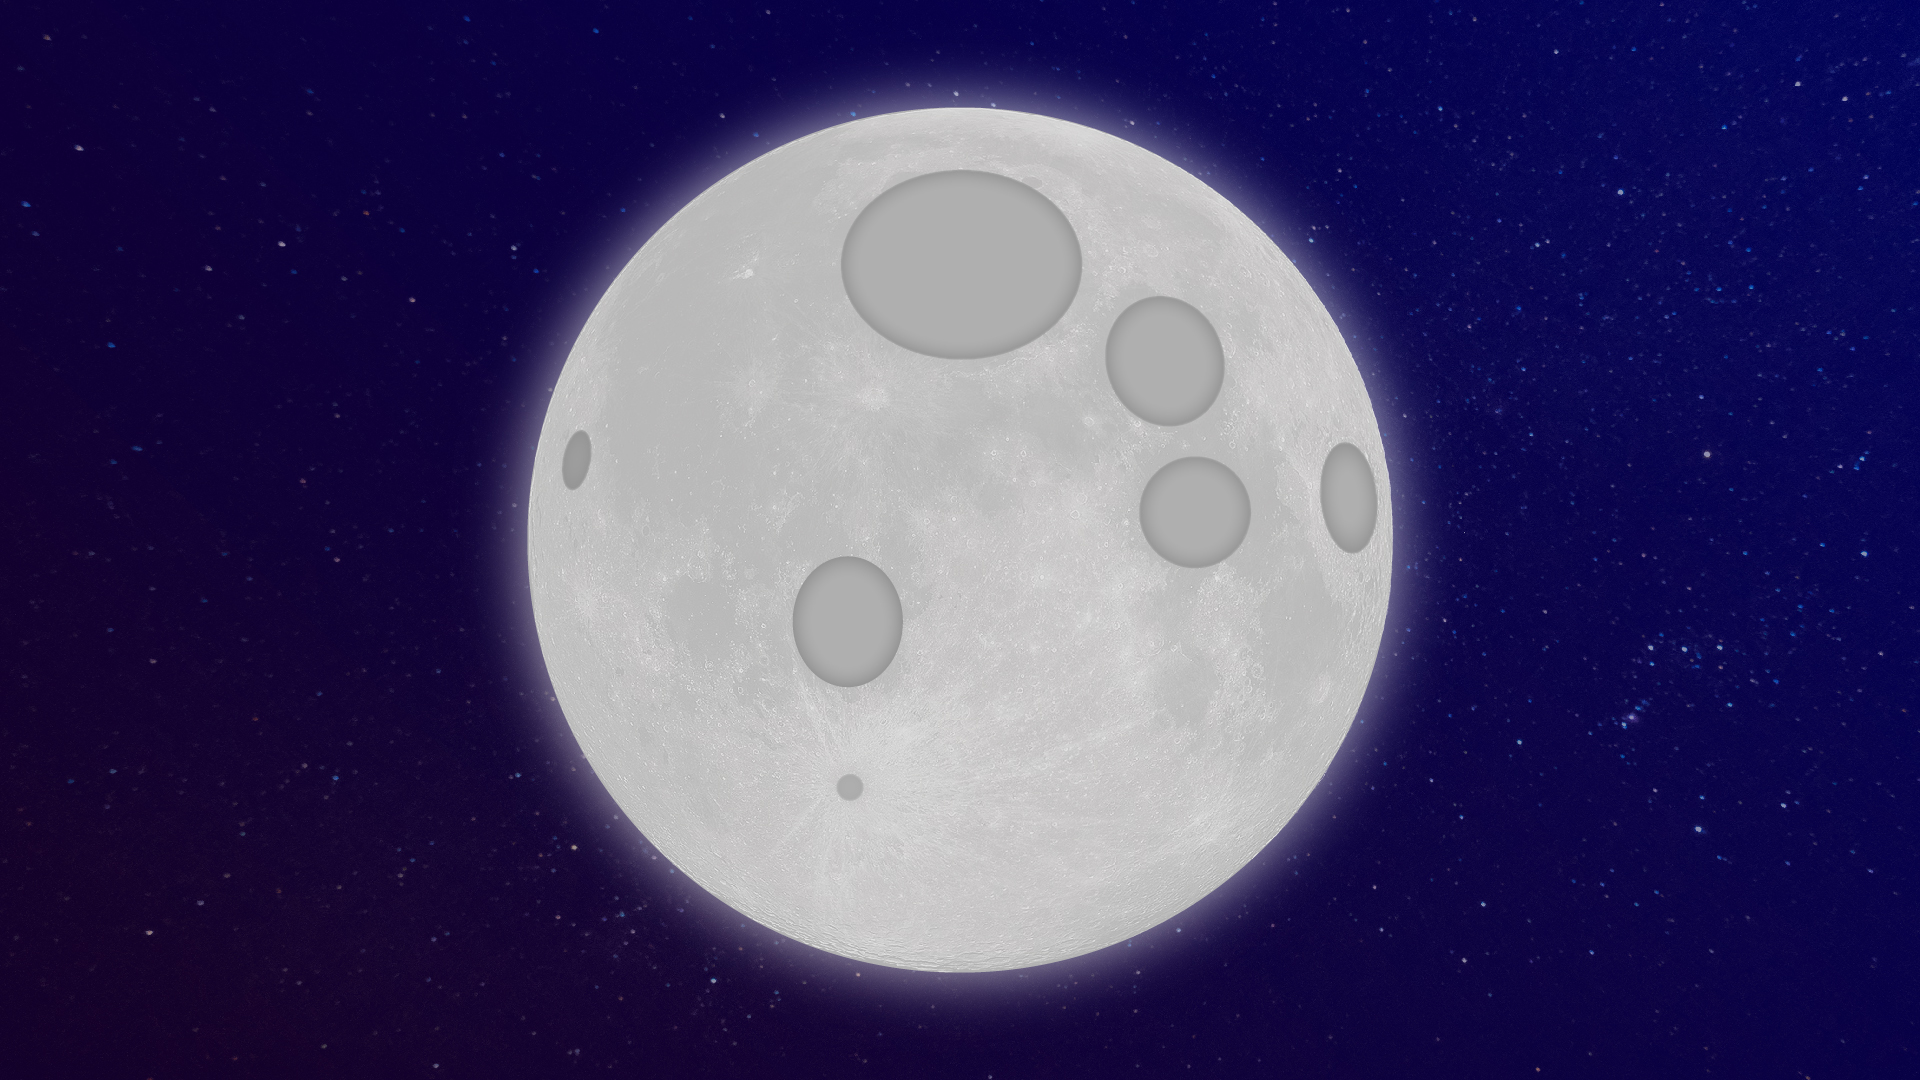 La Lune : tout savoir sur le satellite naturel de la Terre en 24 questions  - Numerama